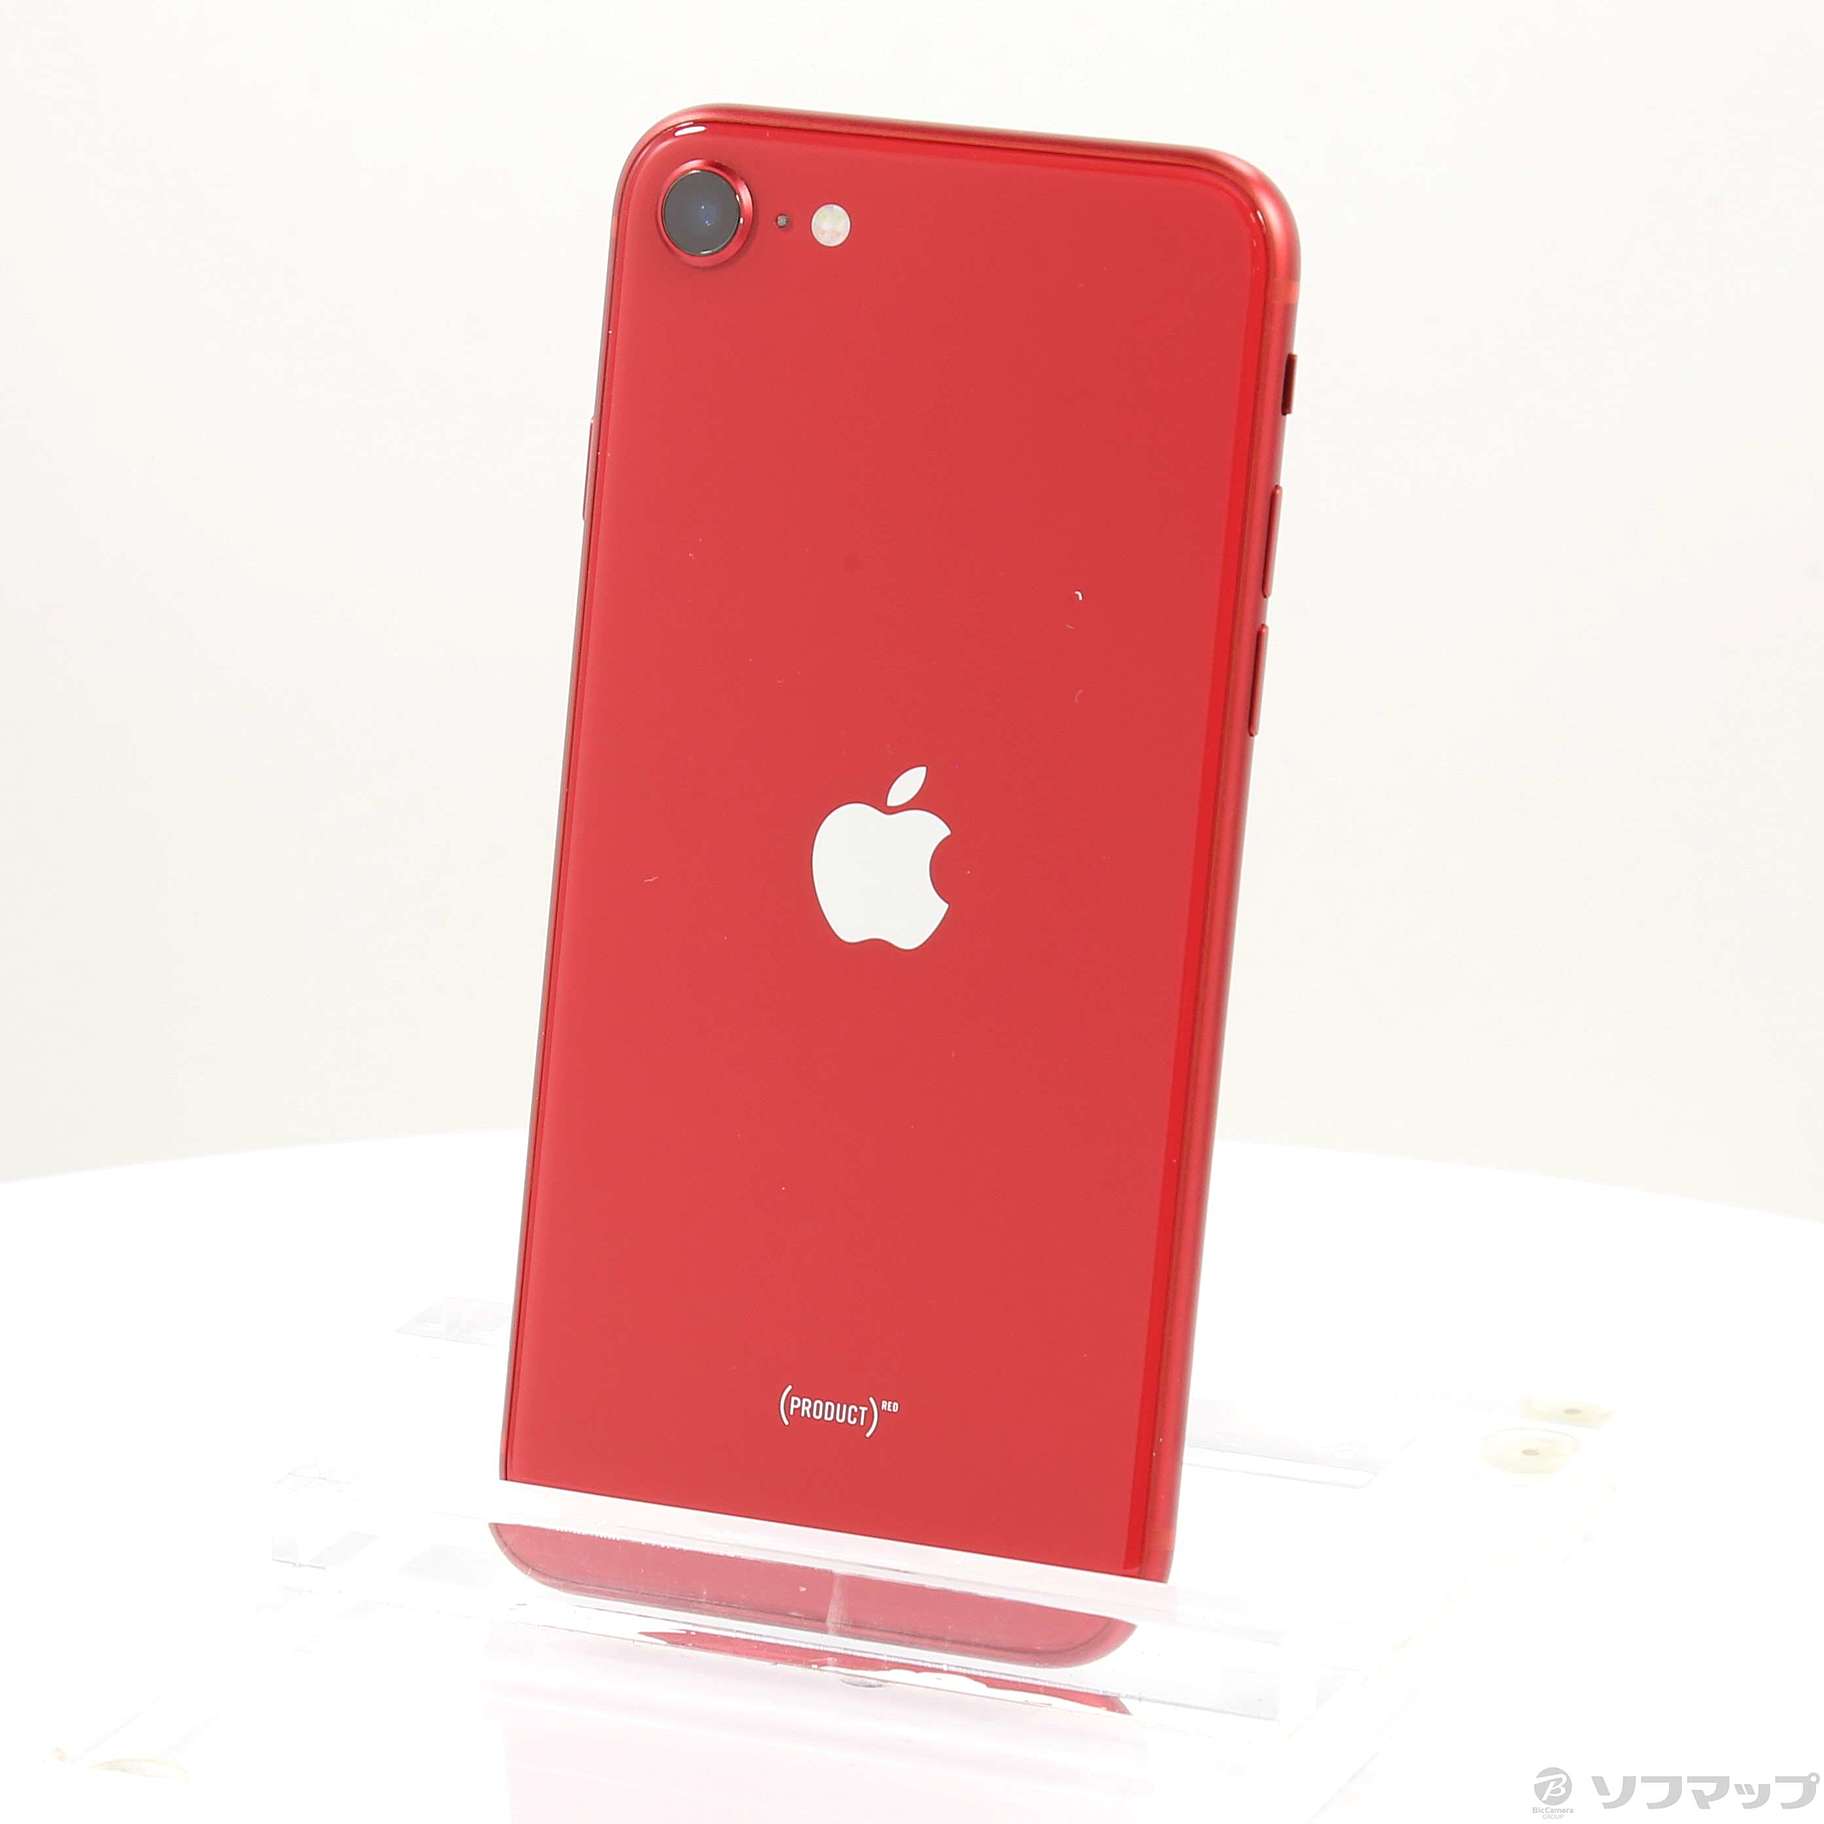 Apple iPhone SE 第2世代 256GB レッド SIMフリー-